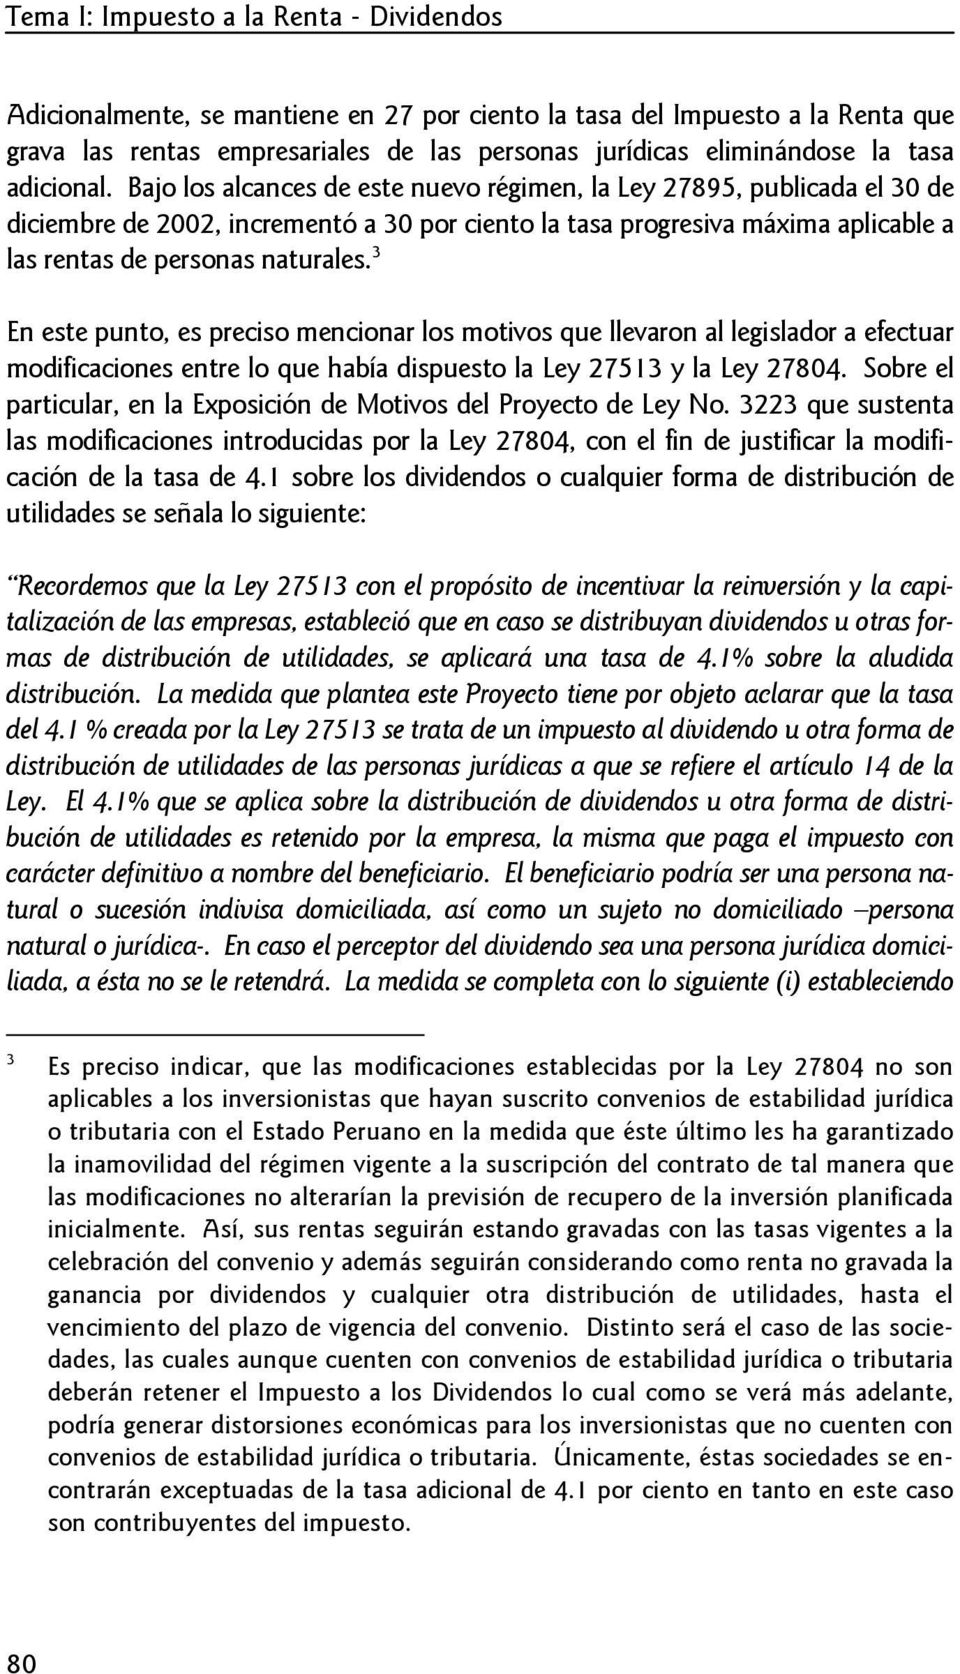 Bajo los alcances de este nuevo régimen, la Ley 27895, publicada el 30 de diciembre de 2002, incrementó a 30 por ciento la tasa progresiva máxima aplicable a las rentas de personas naturales.